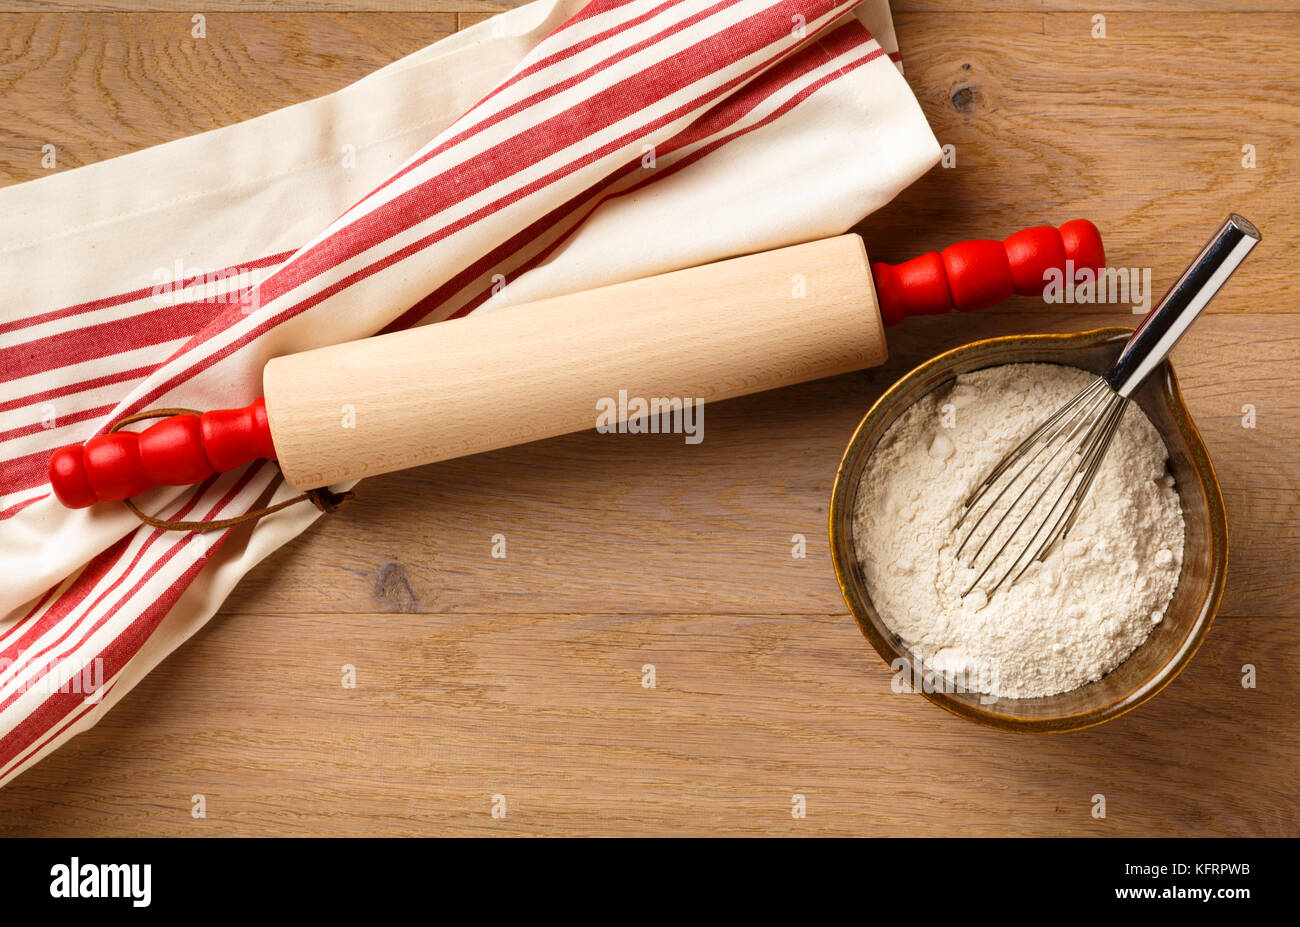 Table de cuisine avec ustensiles de cuisine comptoir comptoir rouleau à pâtisserie en bois et coton torchon torchon, et ingrédients dans un bol de farine blanche Banque D'Images